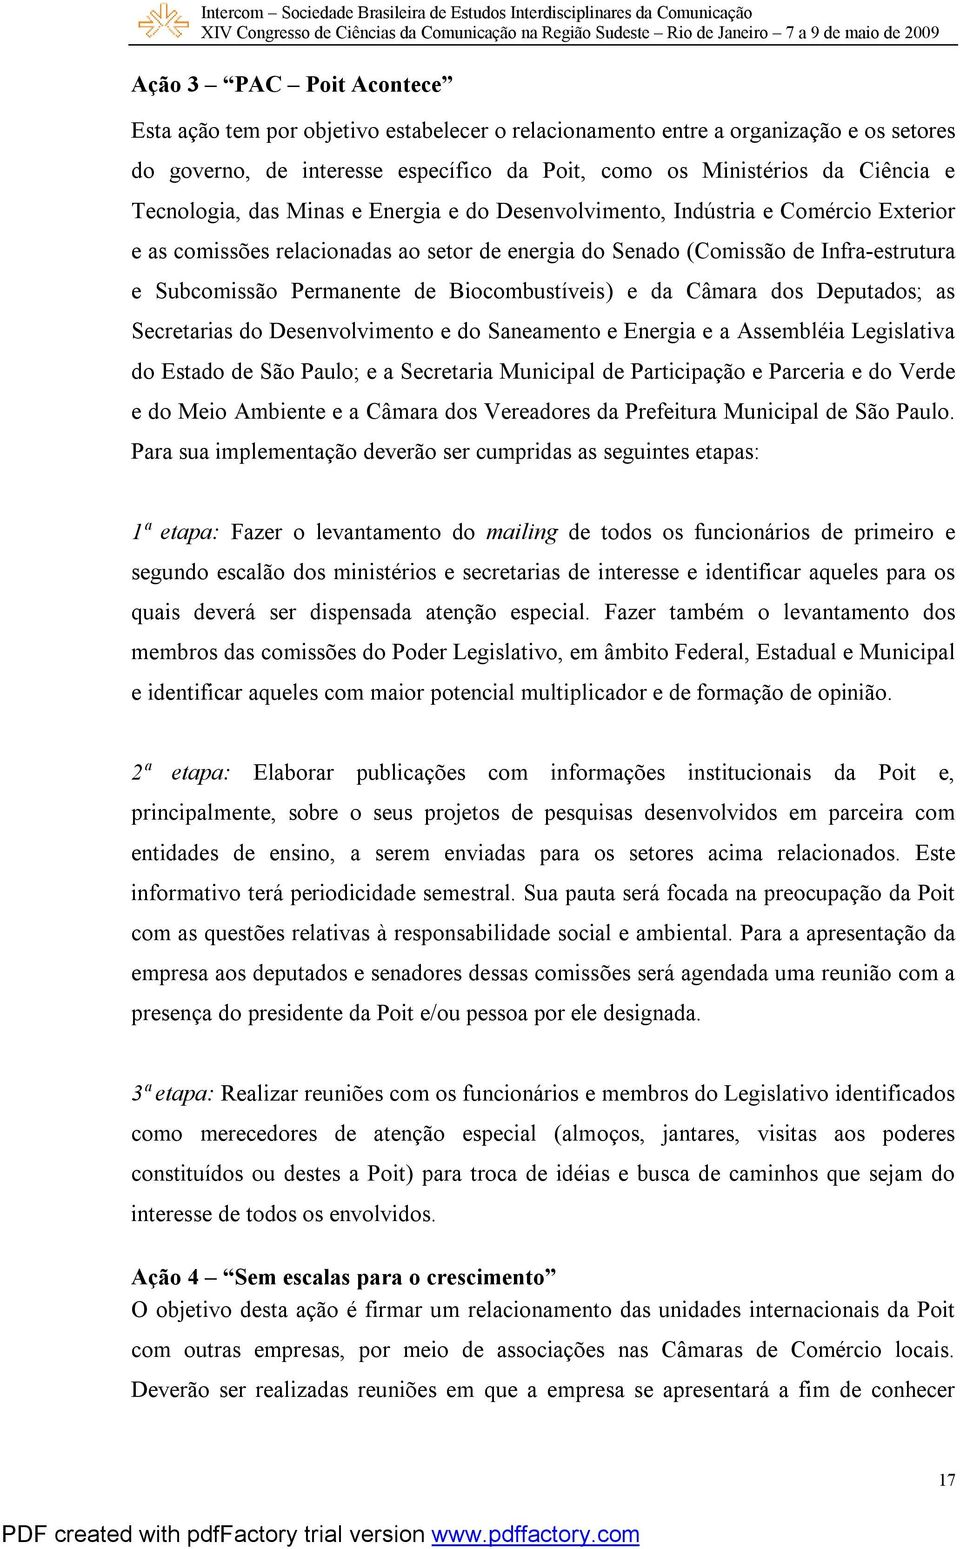 Biocombustíveis) e da Câmara dos Deputados; as Secretarias do Desenvolvimento e do Saneamento e Energia e a Assembléia Legislativa do Estado de São Paulo; e a Secretaria Municipal de Participação e